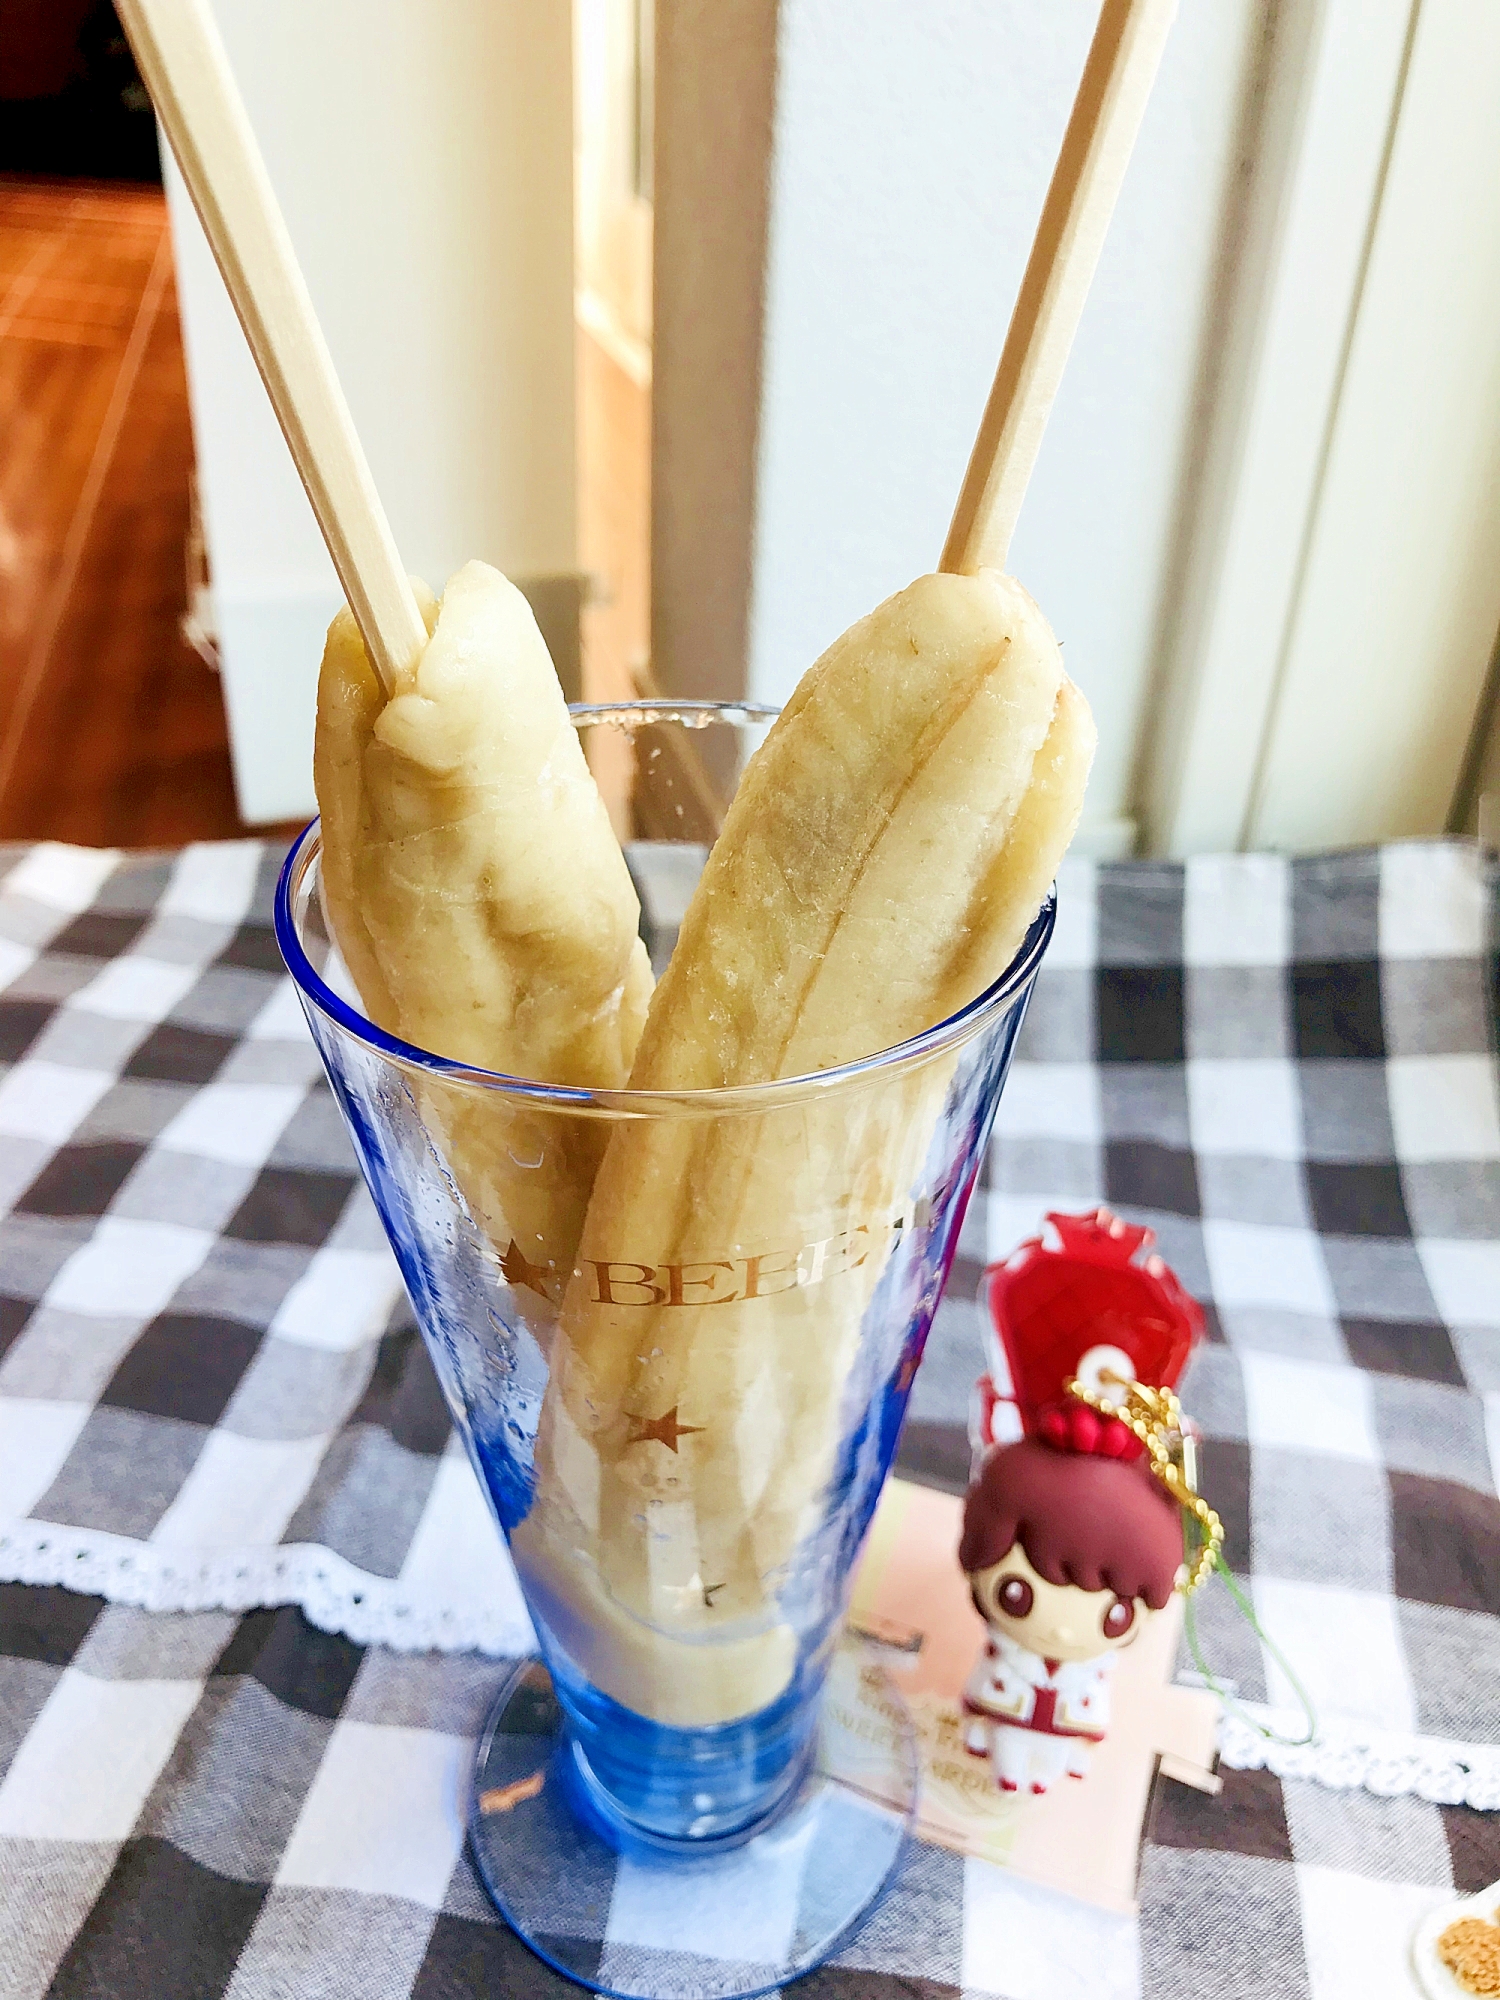 カチカチにならない 簡単 棒付き冷凍バナナアイス レシピ 作り方 By ぼくバナナ 楽天レシピ